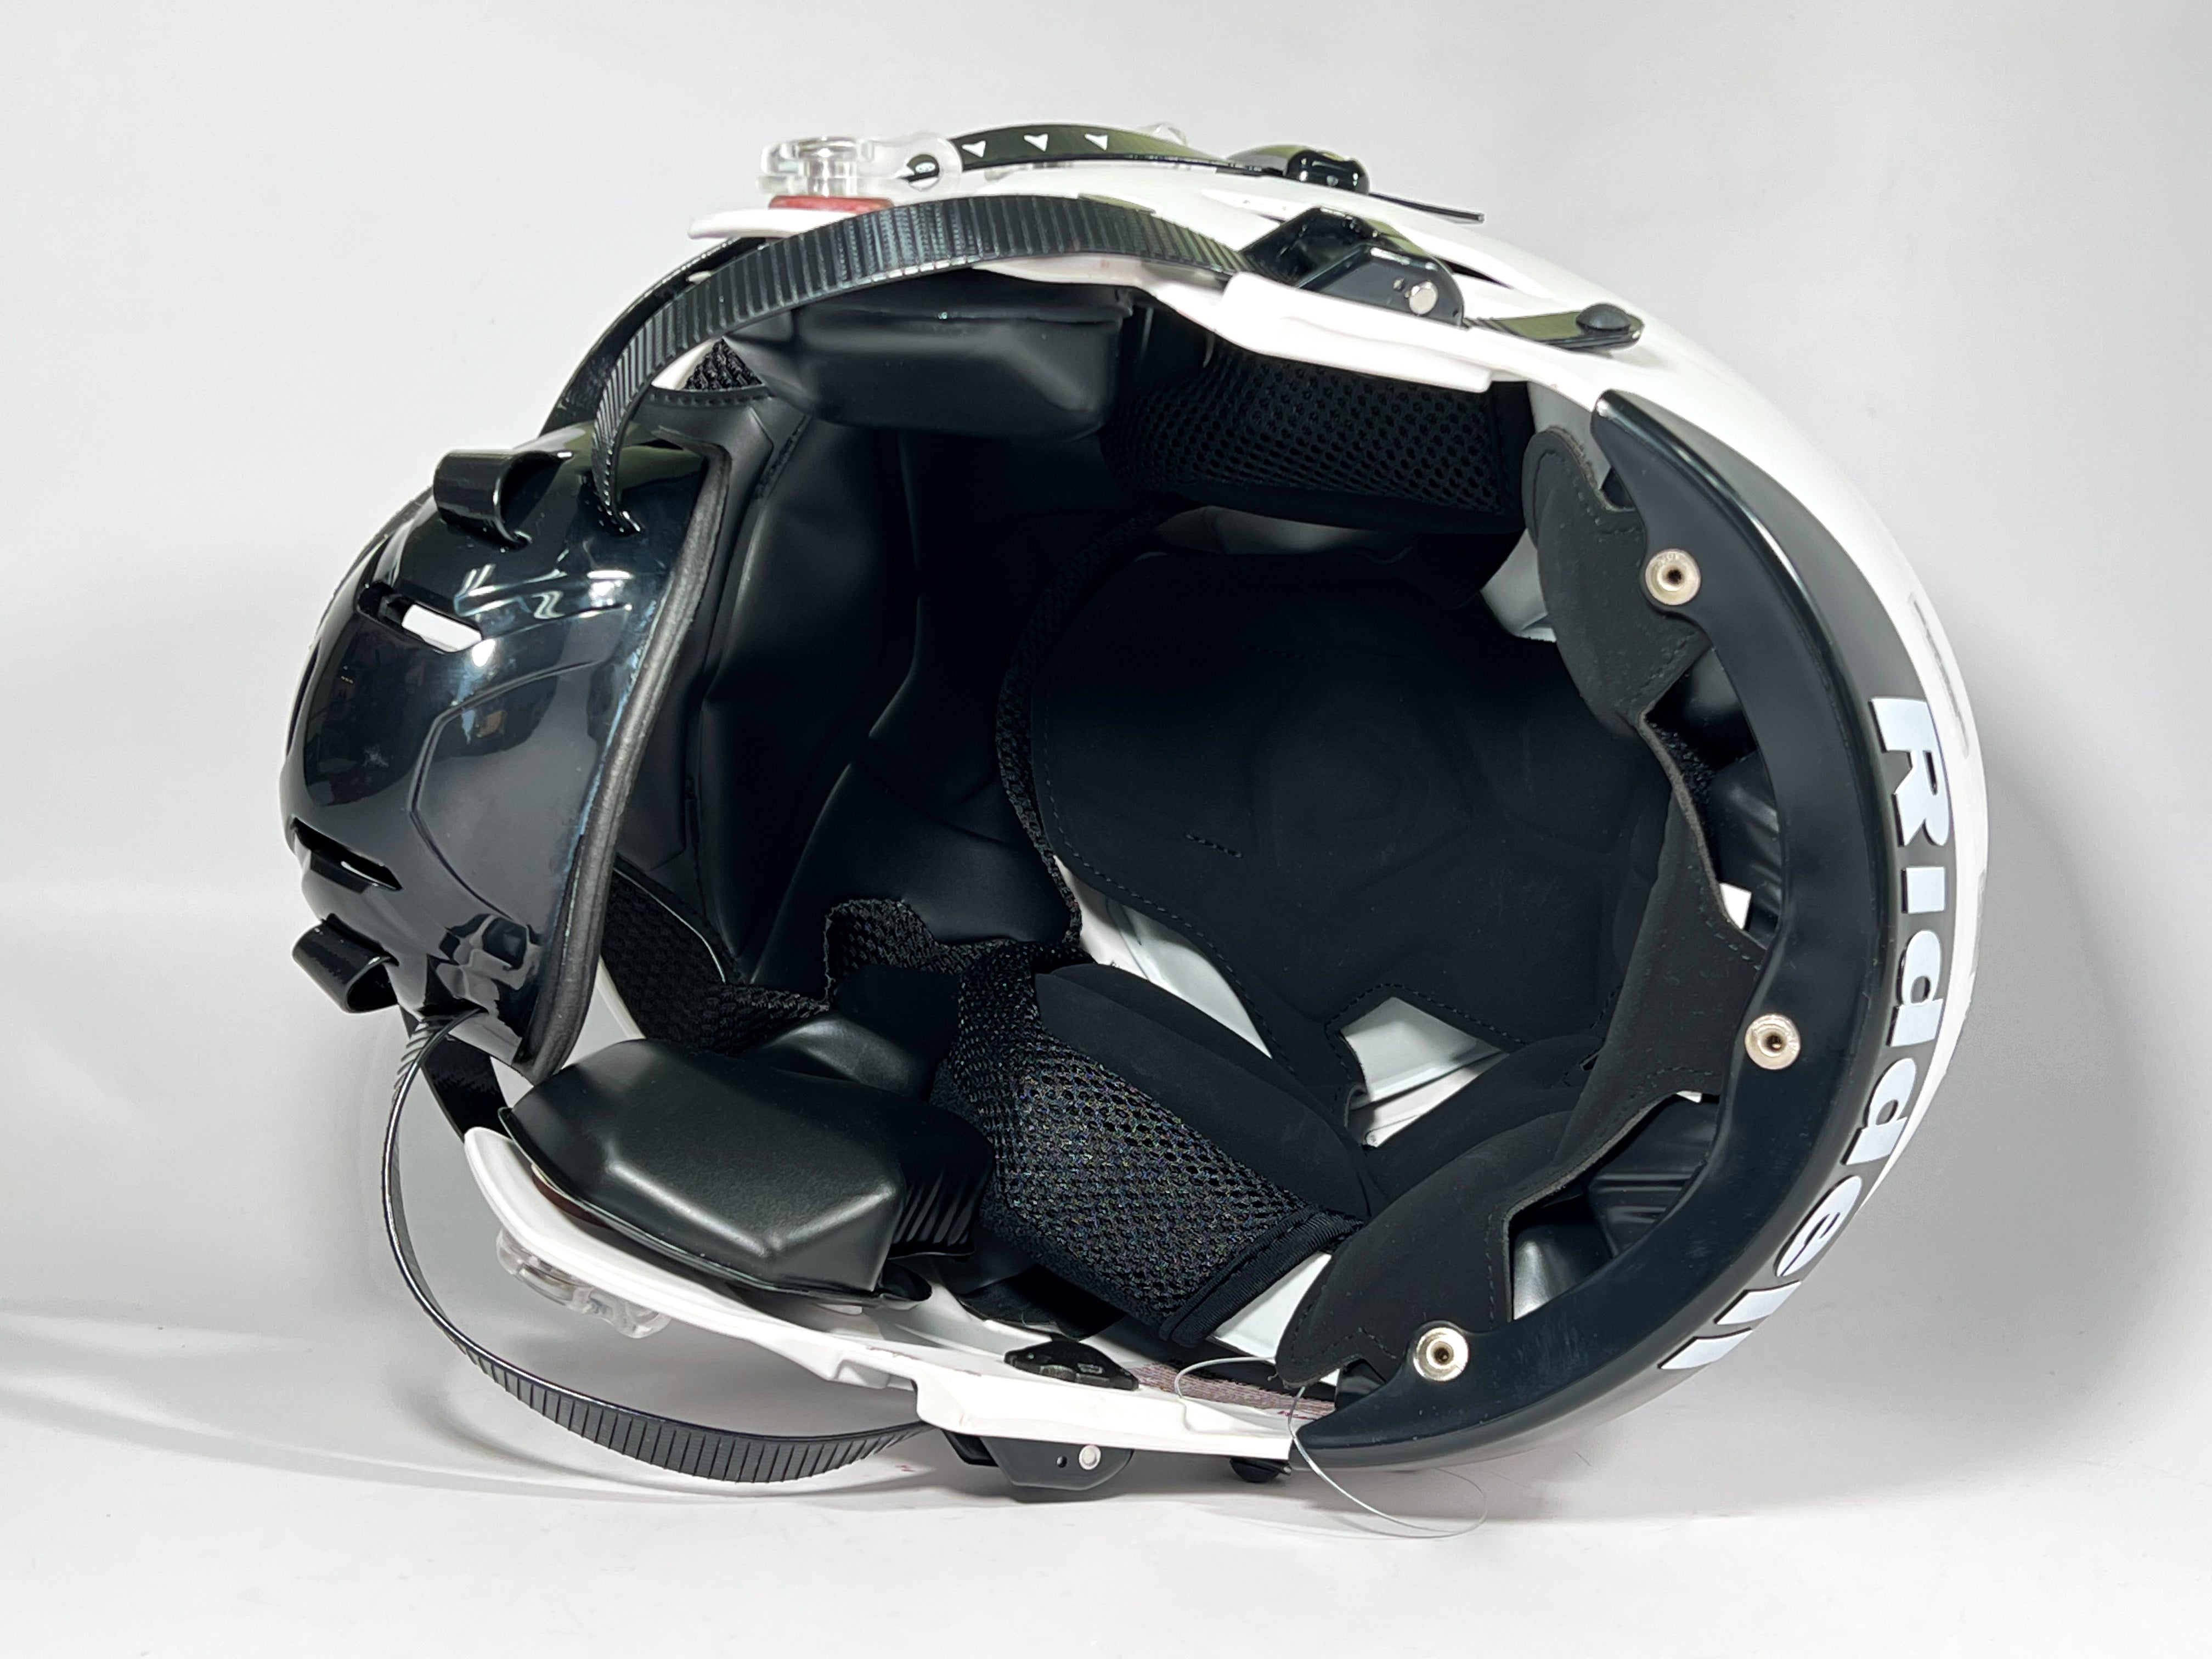 Schuberth Inner Padding for Helmet M1 L